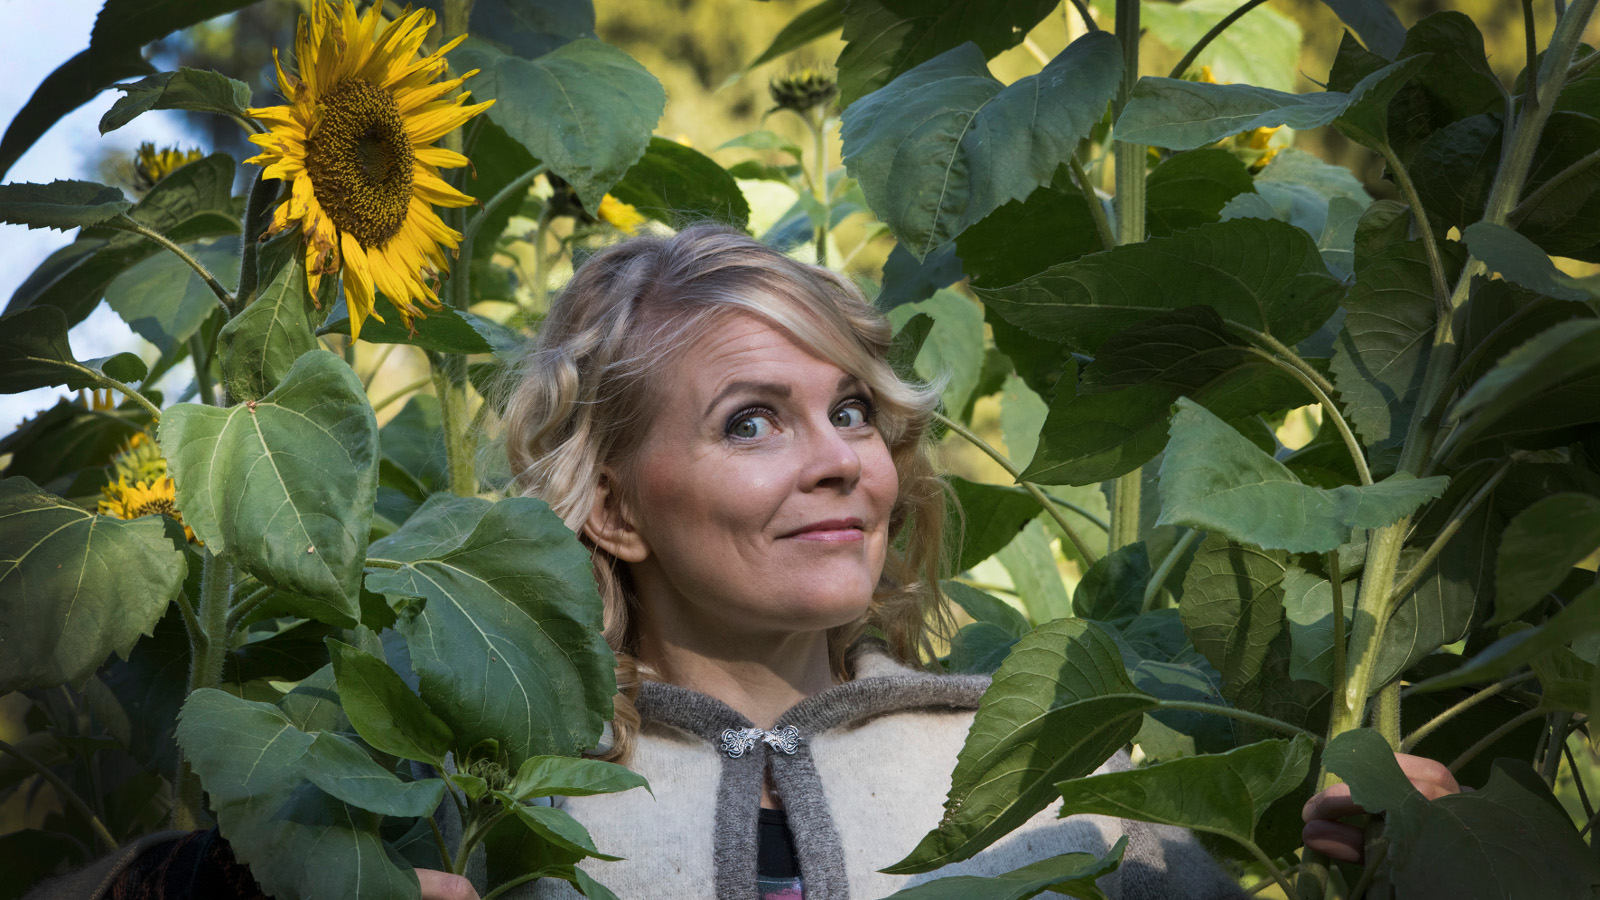 Kuvassa Heli Laaksonen on viherkasvien keskellä ja hänen takanaan on yksi auringonkukka. Kuva on puolivartalokuva.